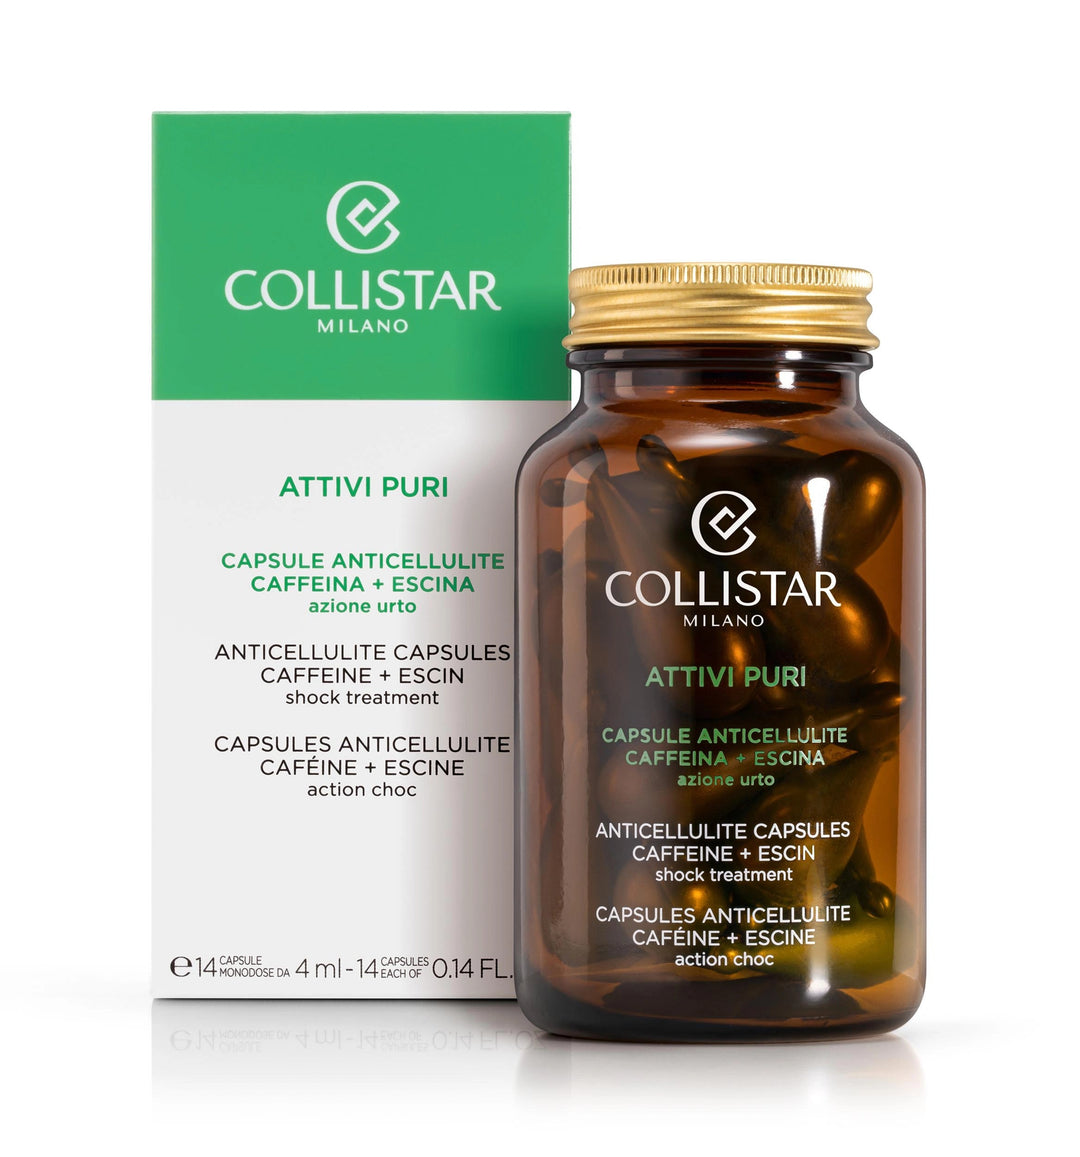 

Collistar Anti-Cellulite Caffeine + Escin Capsule 14 capsules of 4 ml each